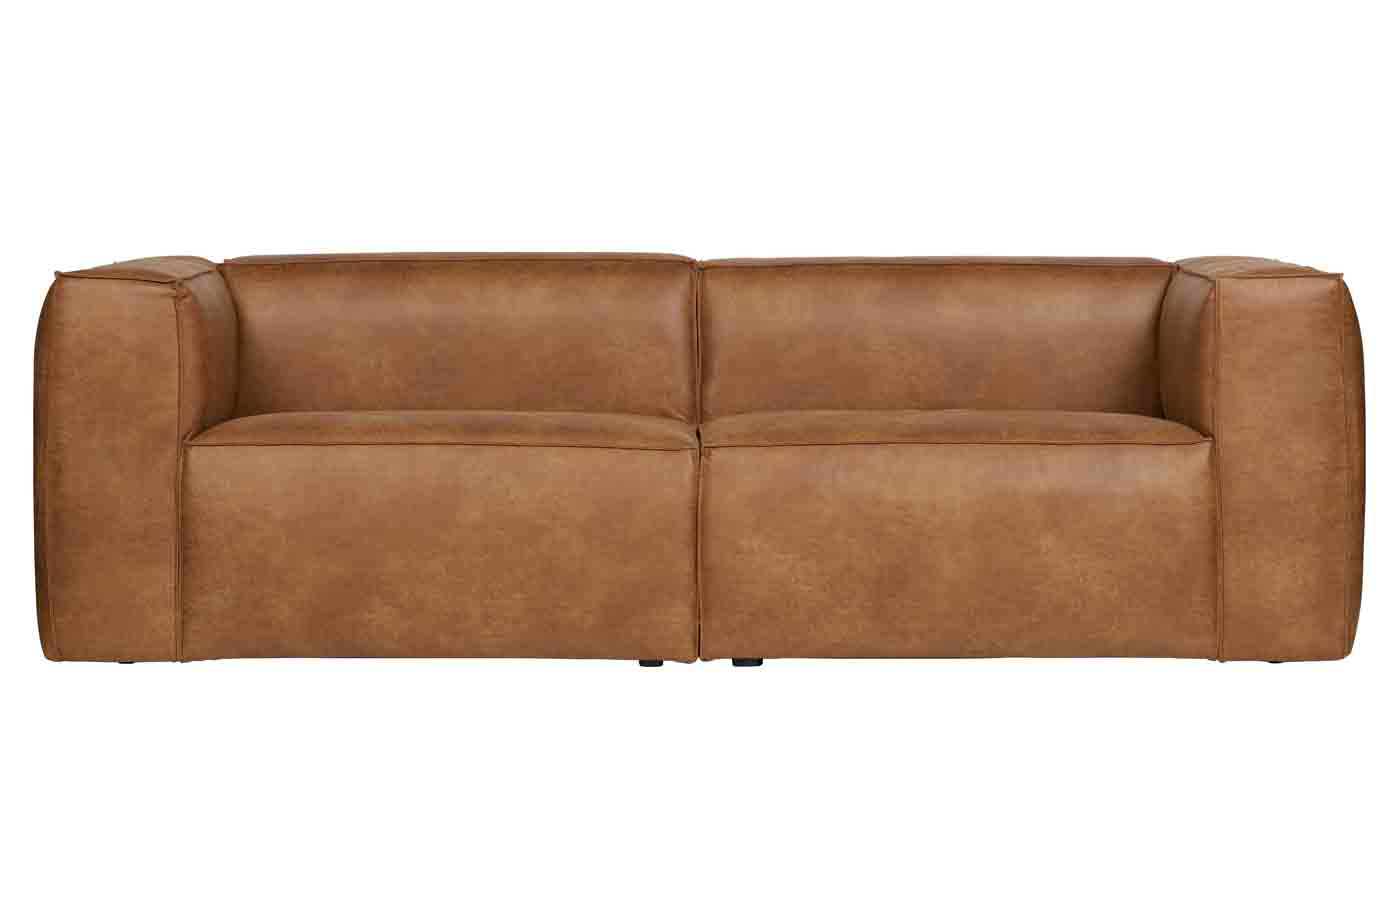 Bequemes Sofa Bean im Loft Design. Bezogen mit hochwertigem recyceltem Leder in der Farbe Cognac